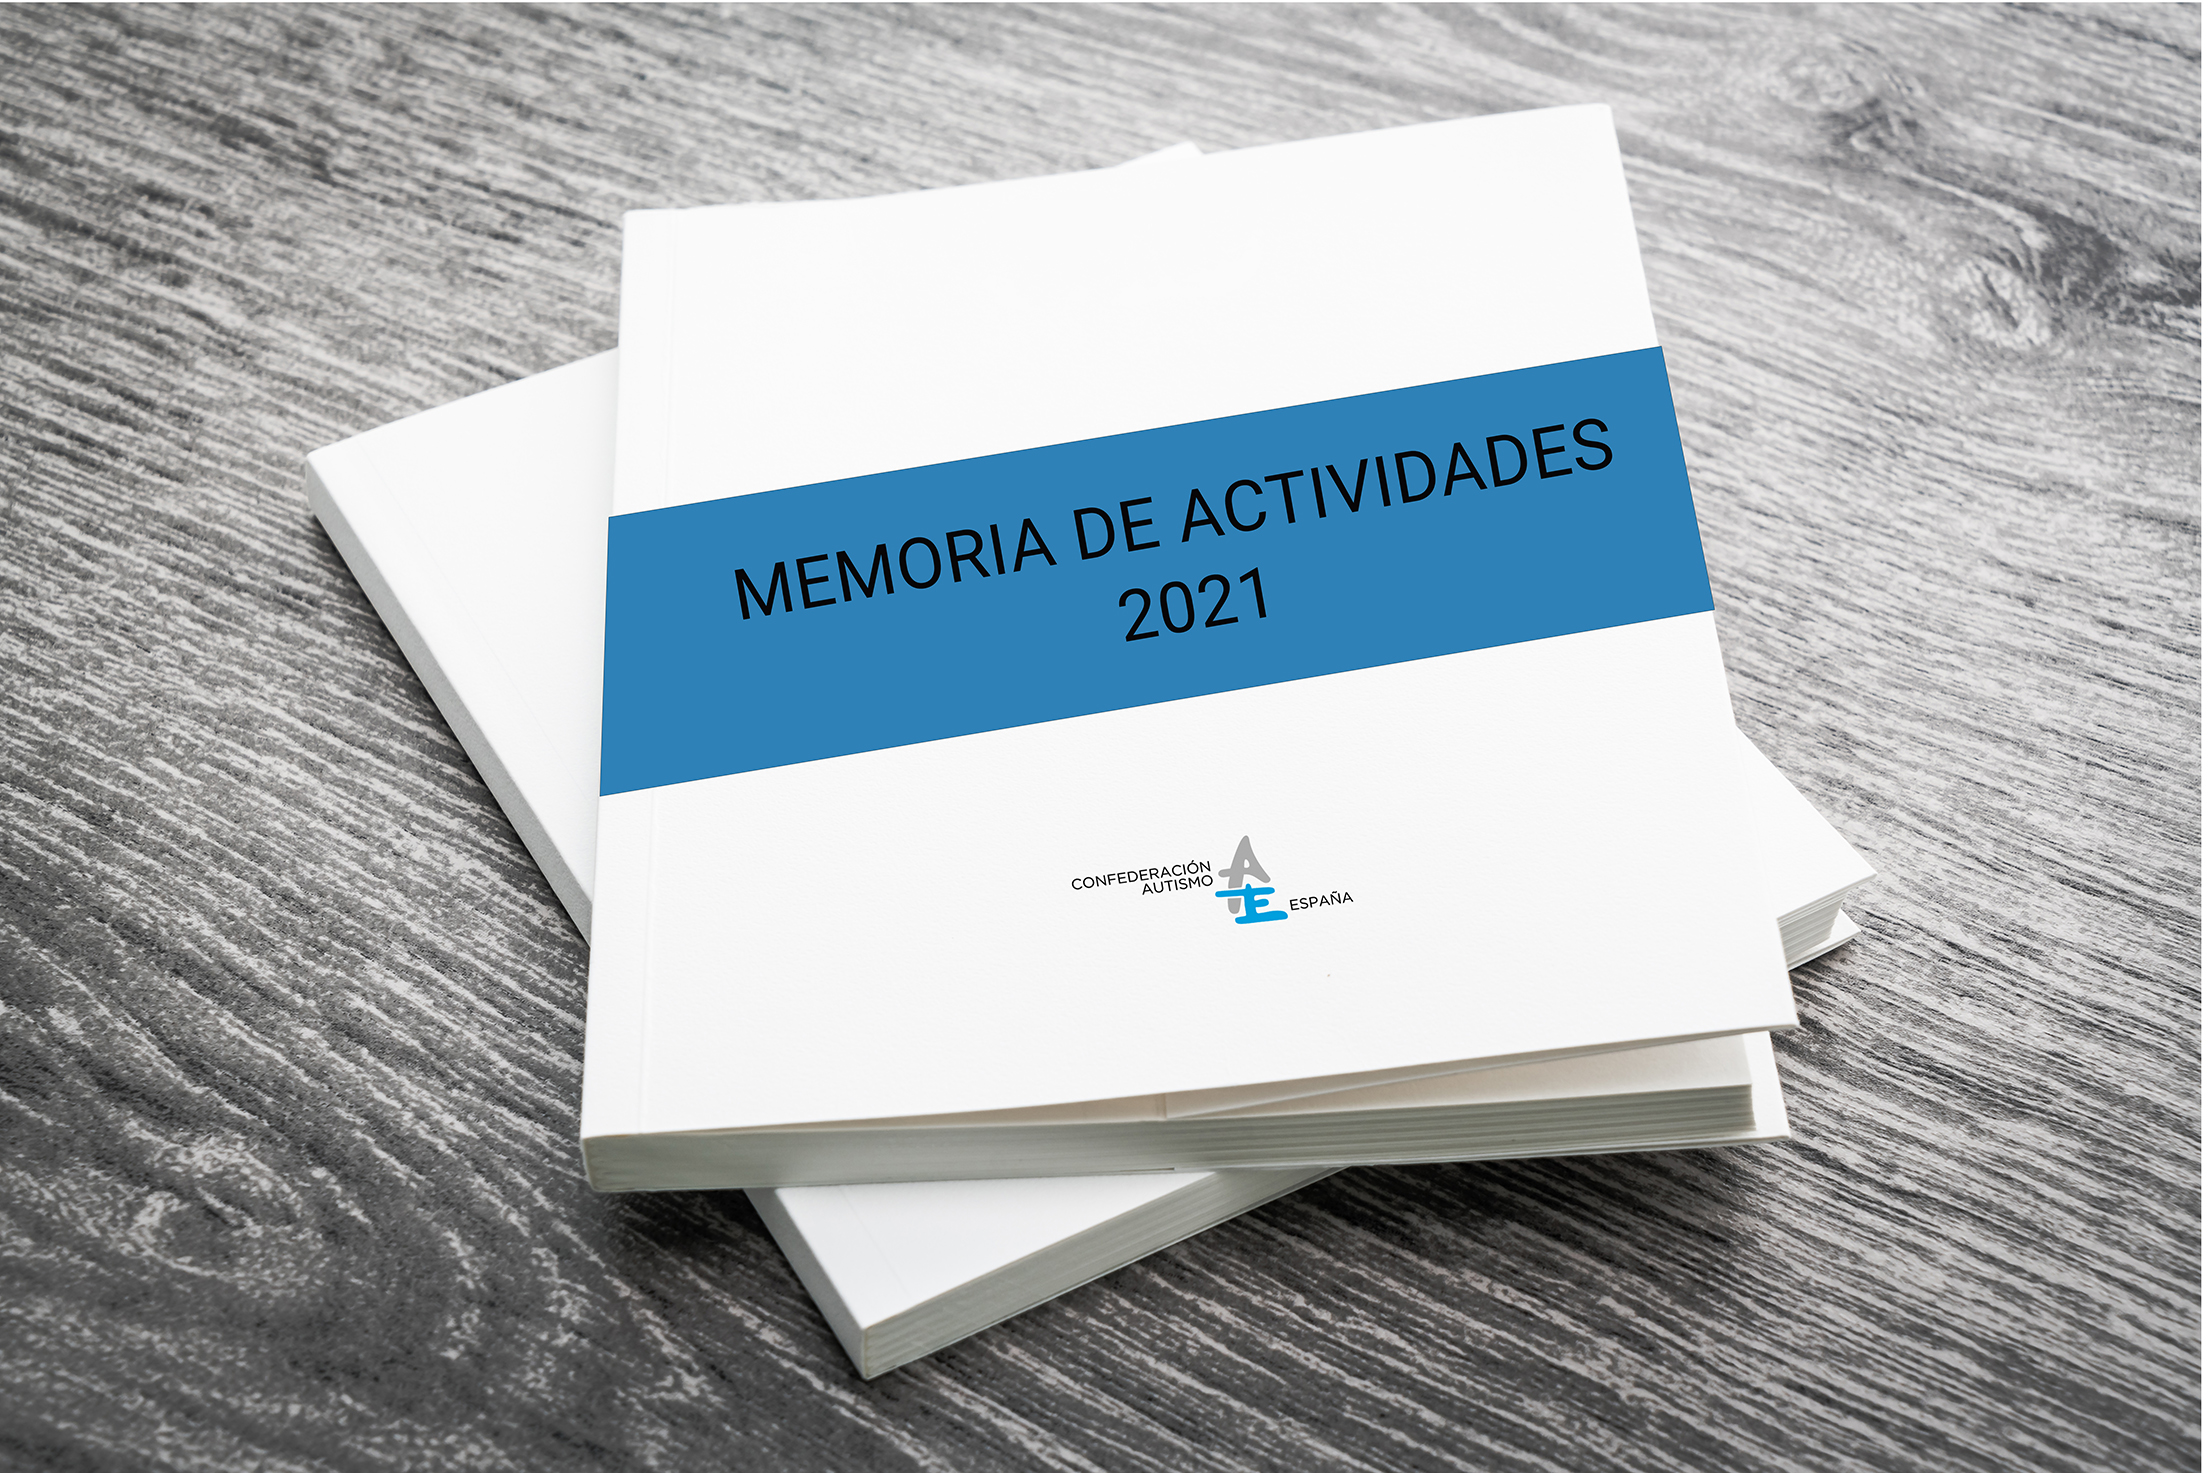 Memoria de actividades de Autismo Espana en 2021